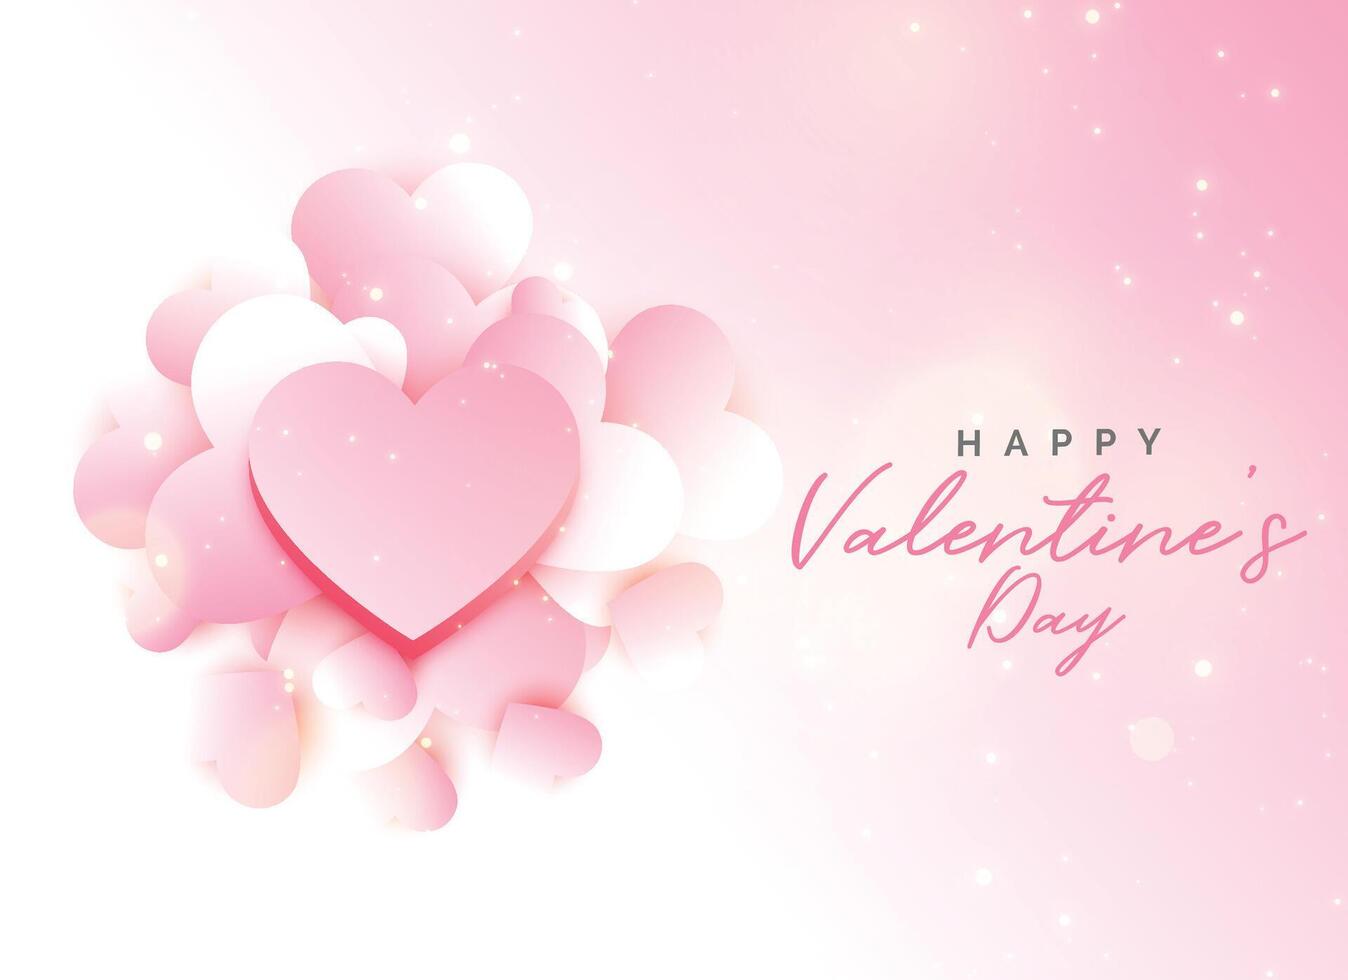 soft valentine's day pink background design vector